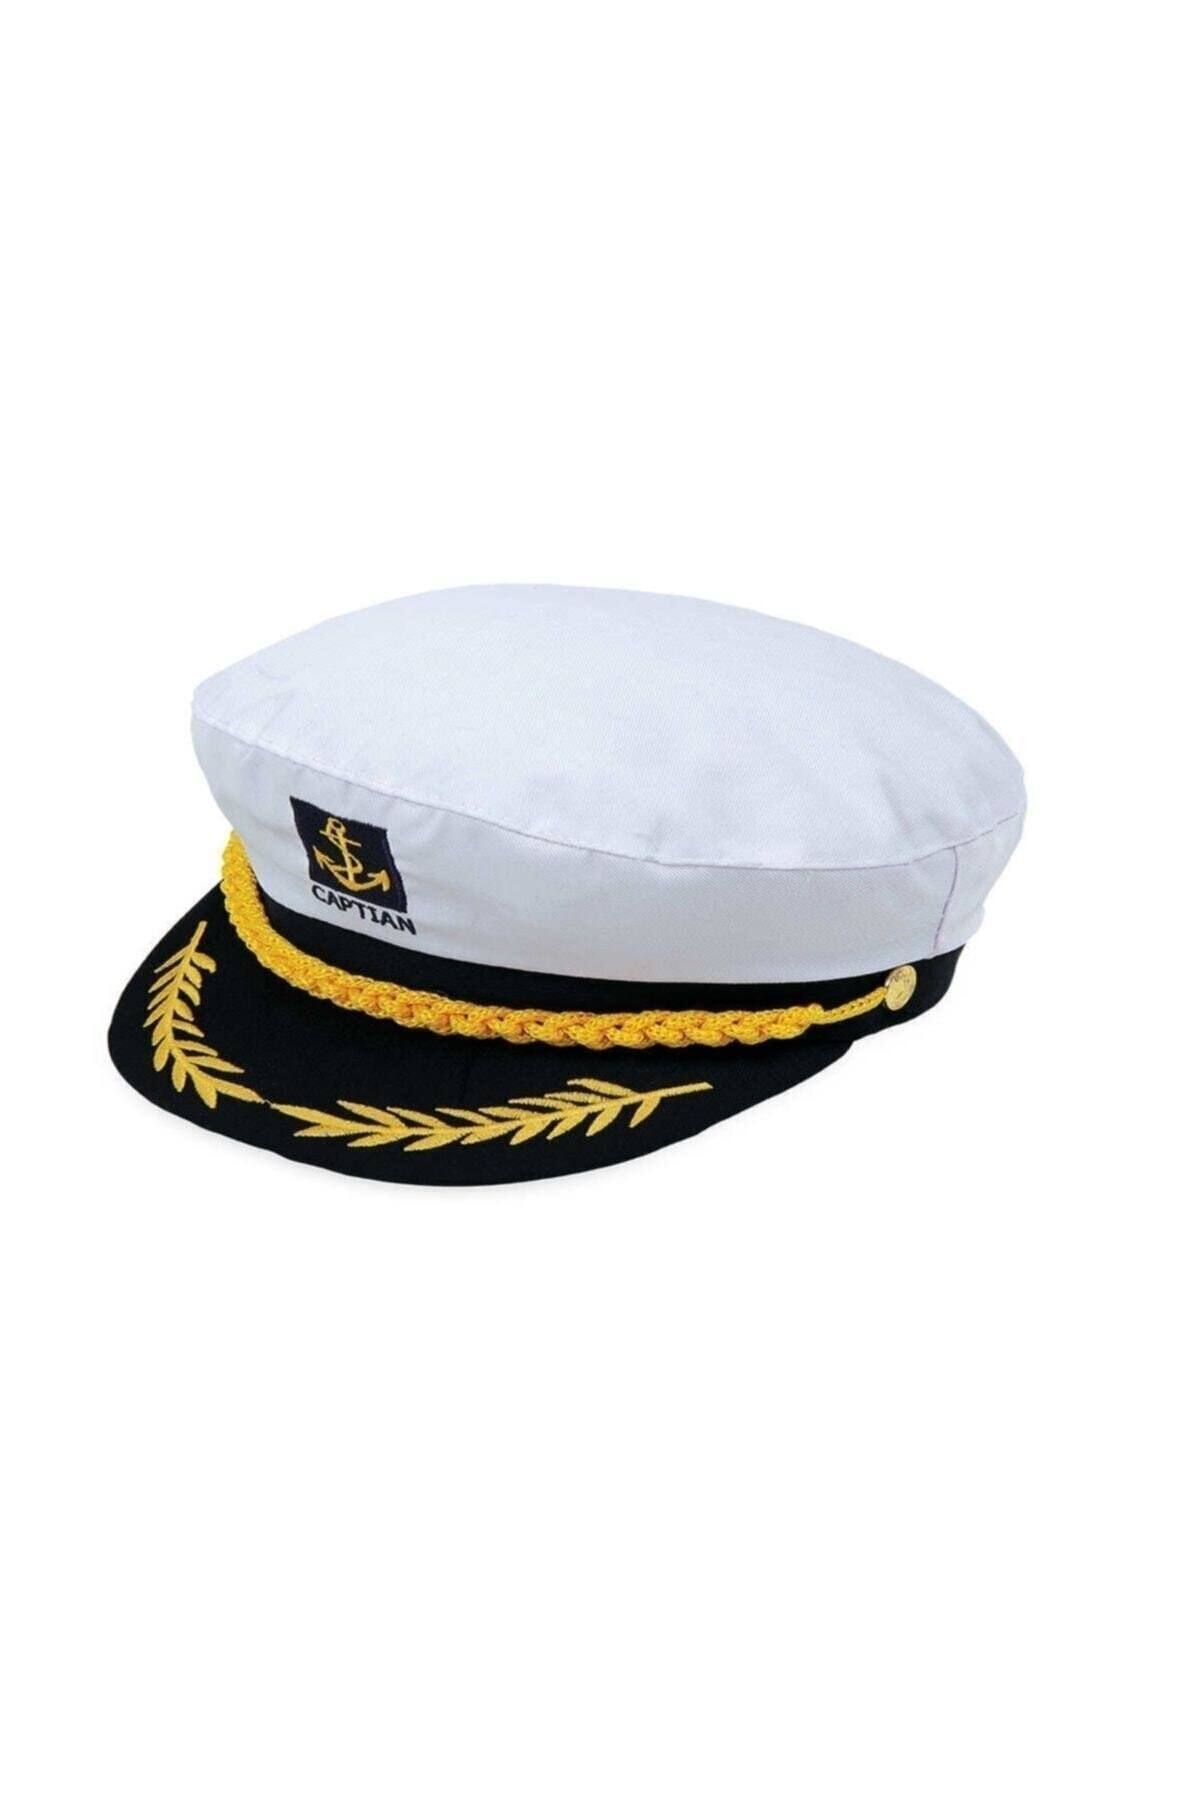 cilt moda Sicilya  İşnar Yeni Sezon Moda Denizci Kaptan Şapkası Fiyatı, Yorumları - TRENDYOL